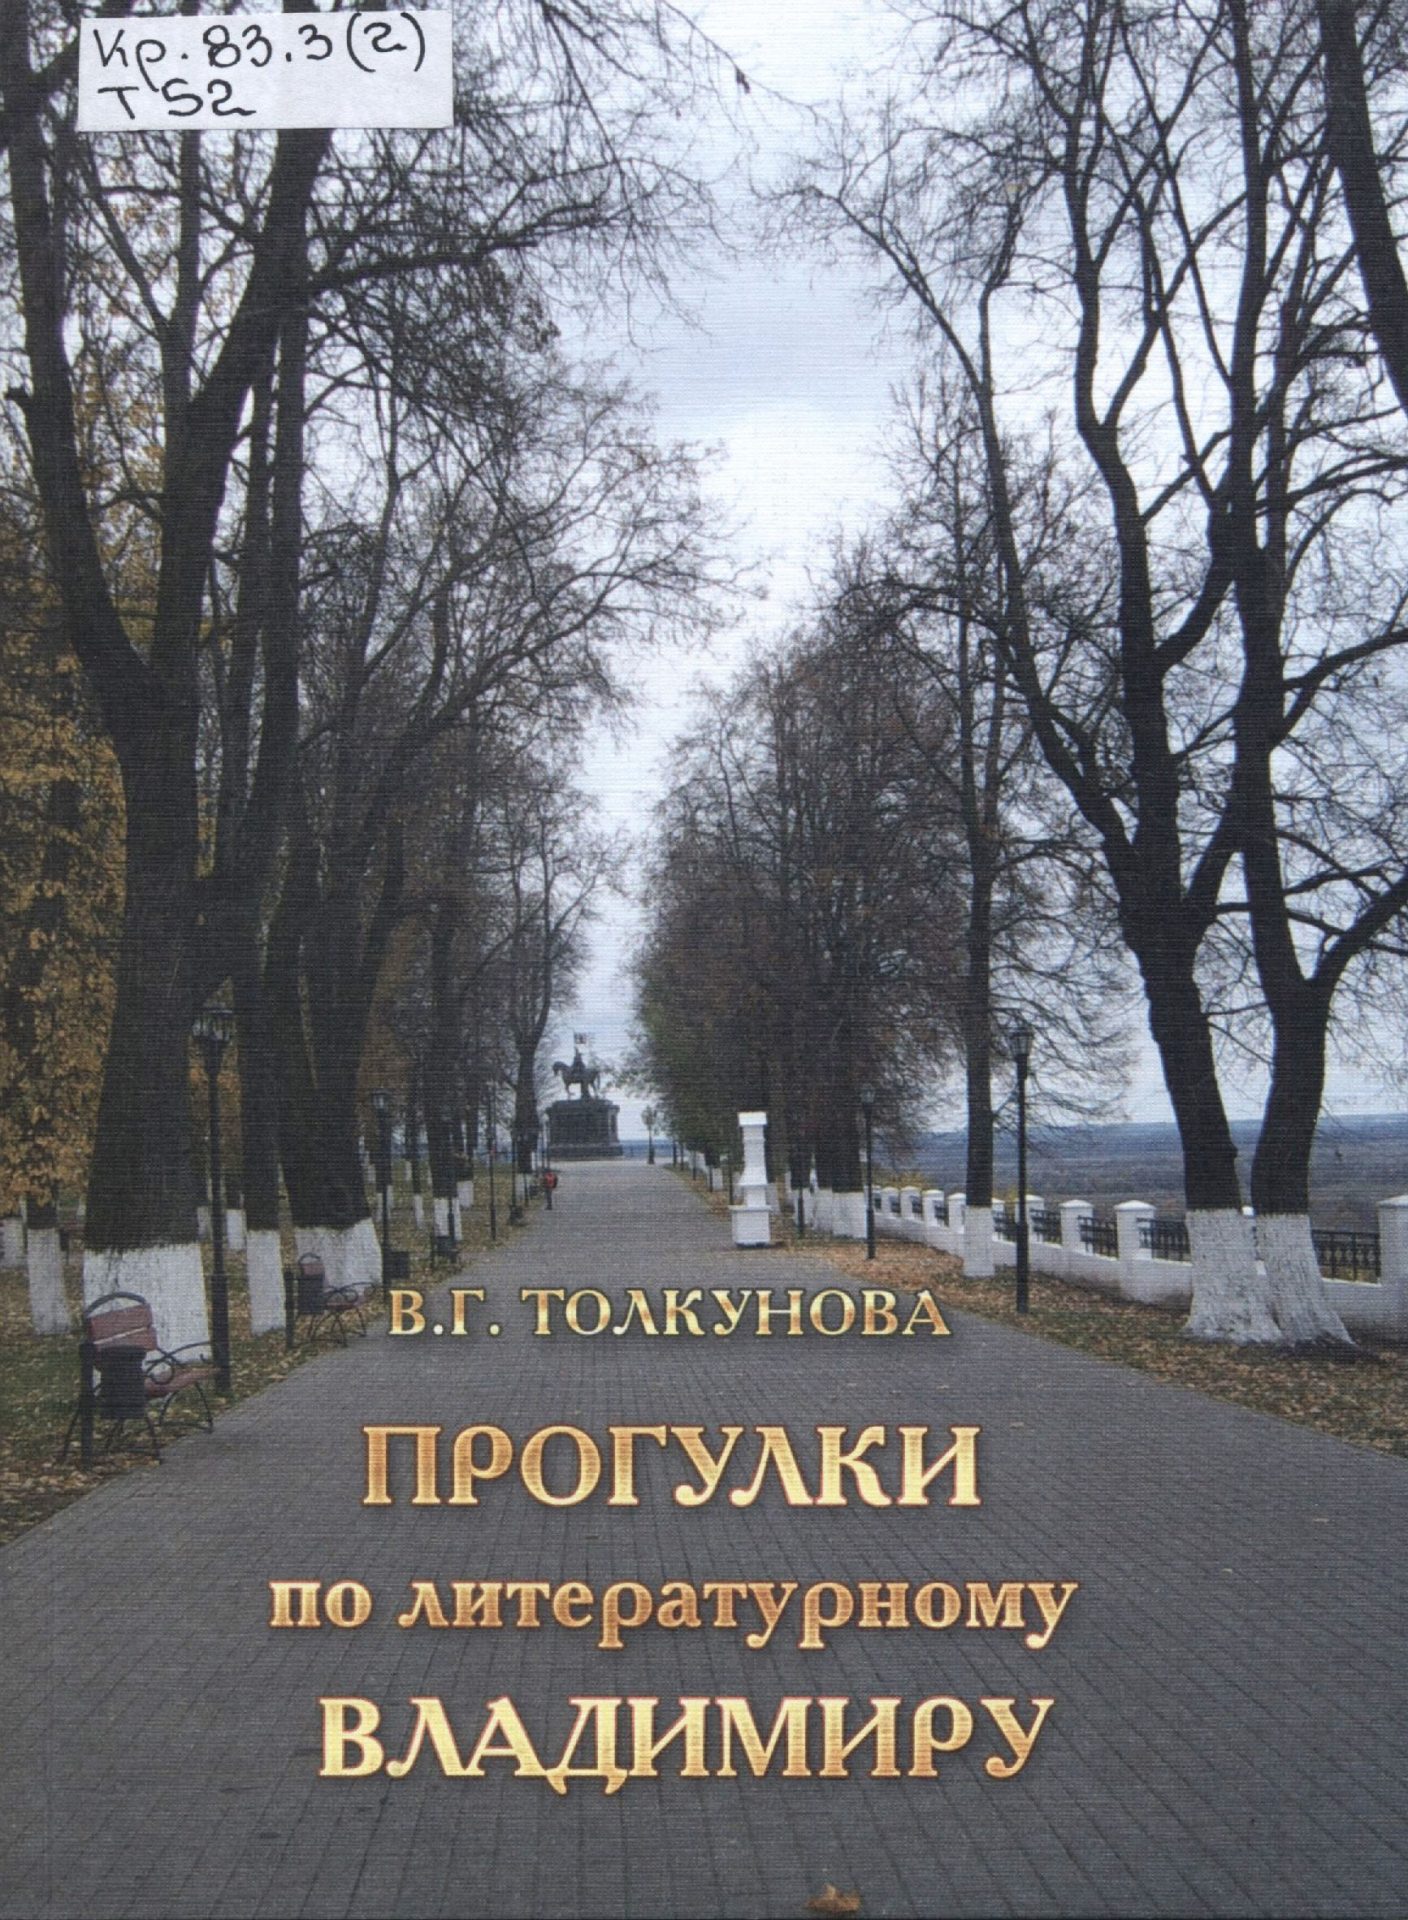 Обложка книги "Прогулки по литературному Владимиру"